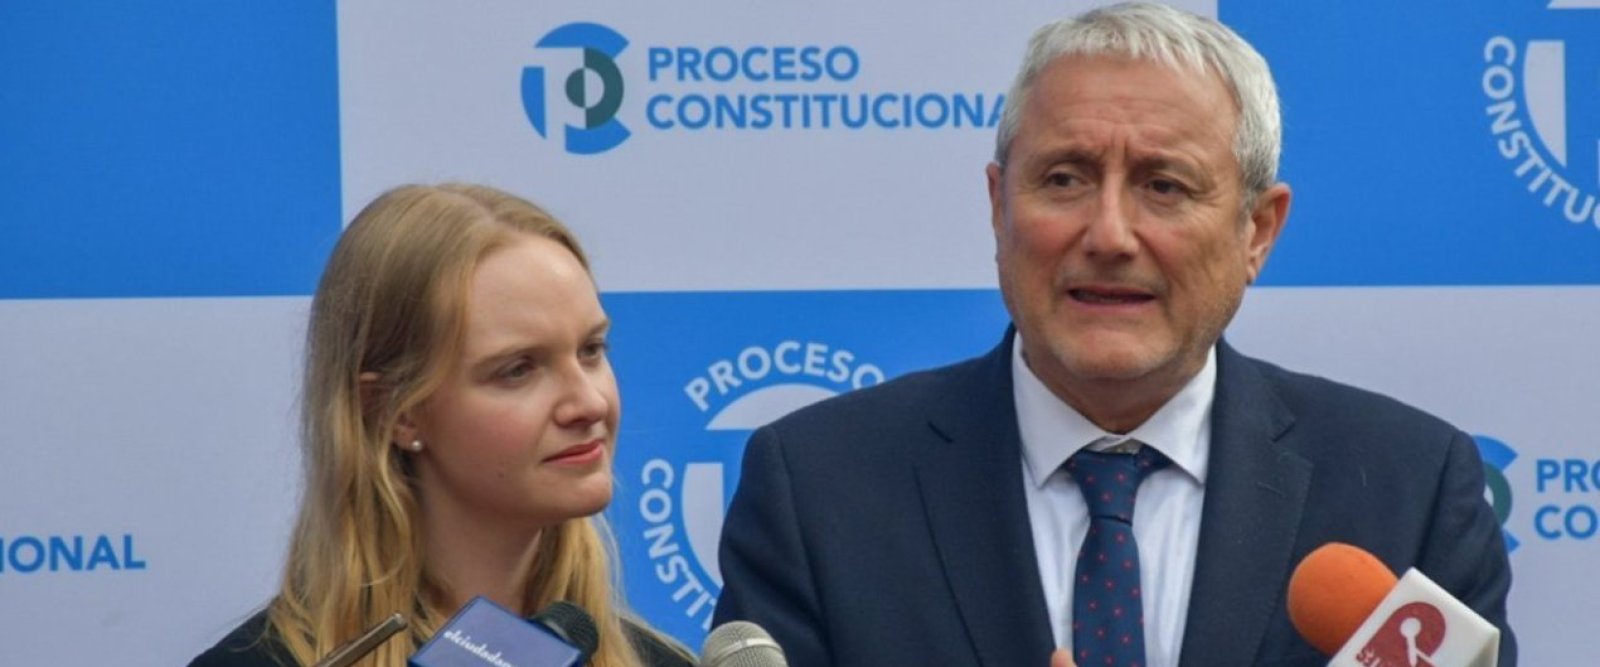 Presidencia Consejo Constitucional: ¿Quiénes son Beatriz Hevia y Aldo Valle?